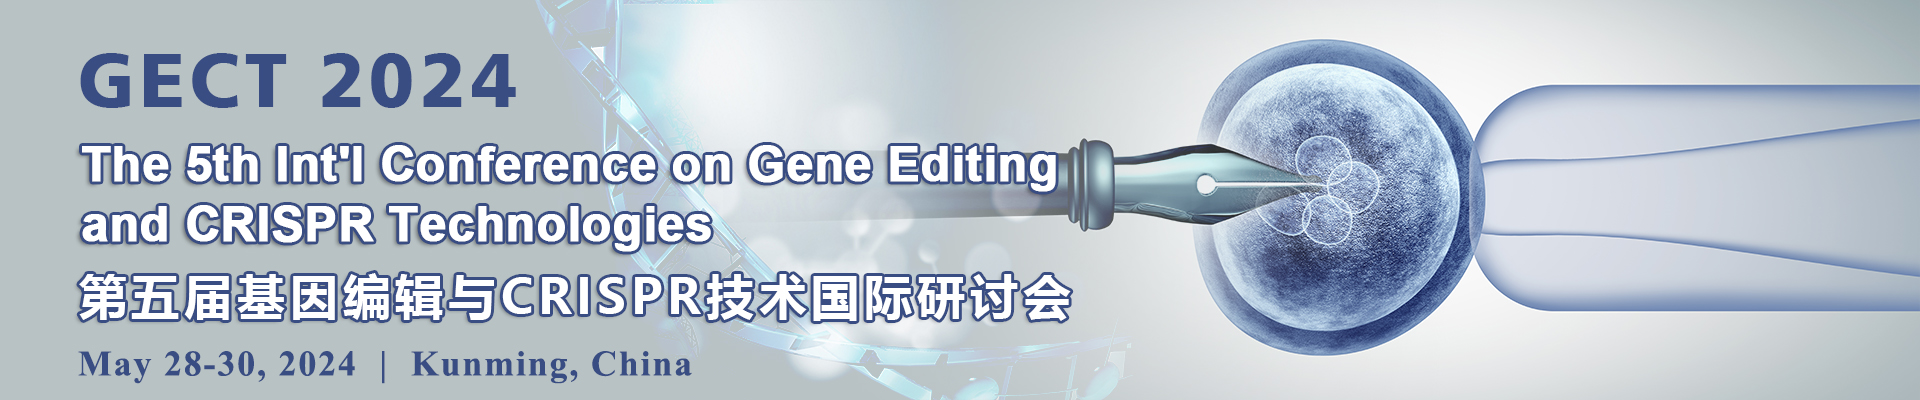 第五届基因编辑与CRISPR技术国际研讨会(GECT 2024)